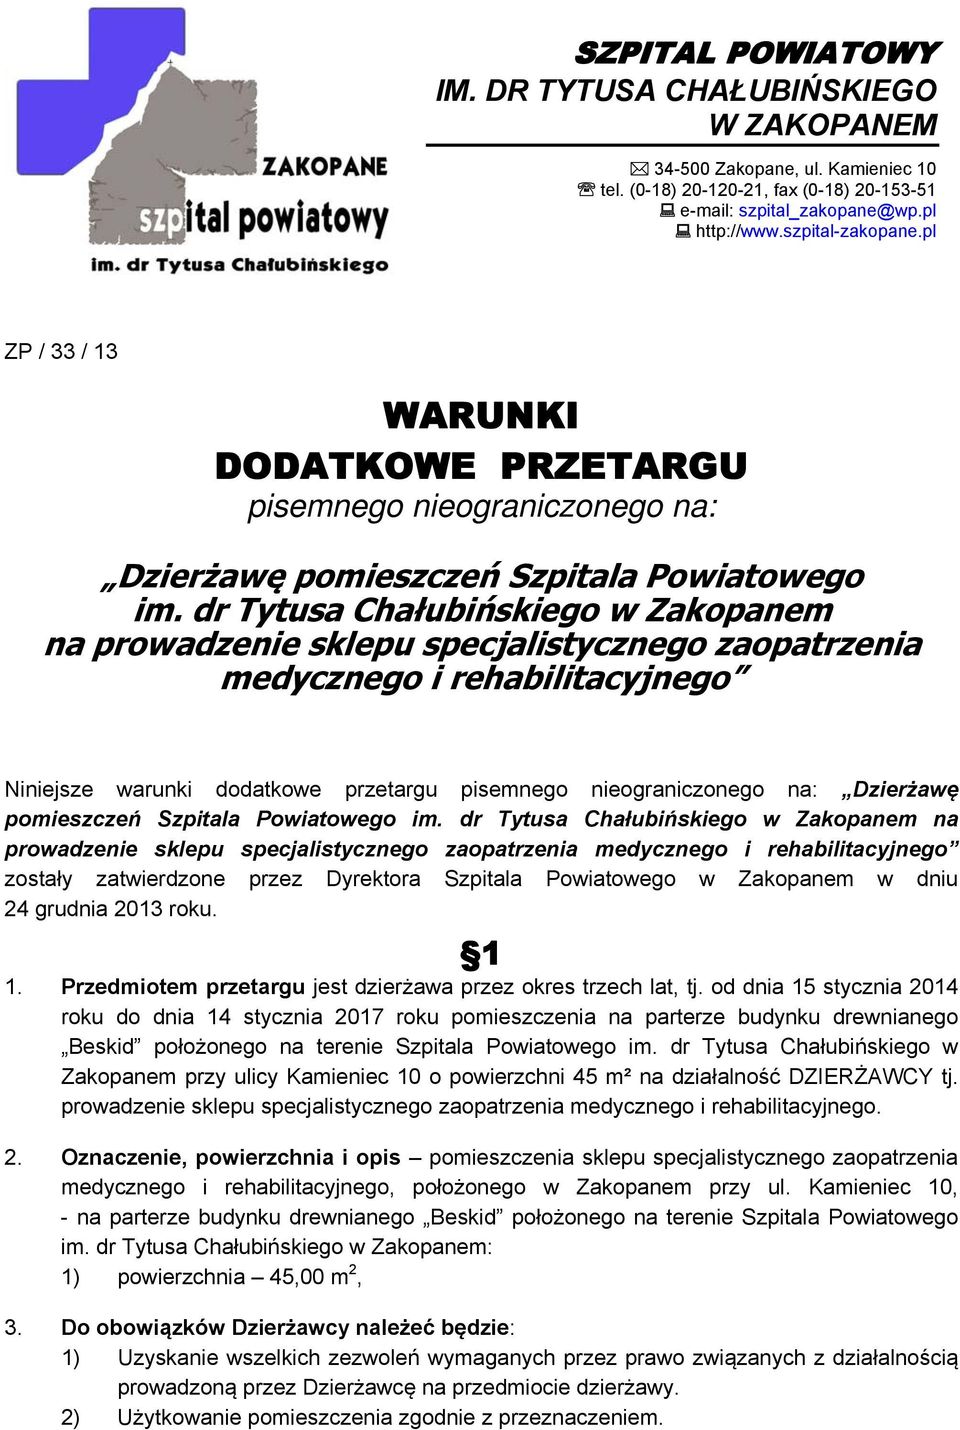 dr Tytusa Chałubińskiego w Zakopanem na prowadzenie sklepu specjalistycznego zaopatrzenia medycznego i rehabilitacyjnego Niniejsze warunki dodatkowe przetargu pisemnego nieograniczonego na: Dzierżawę